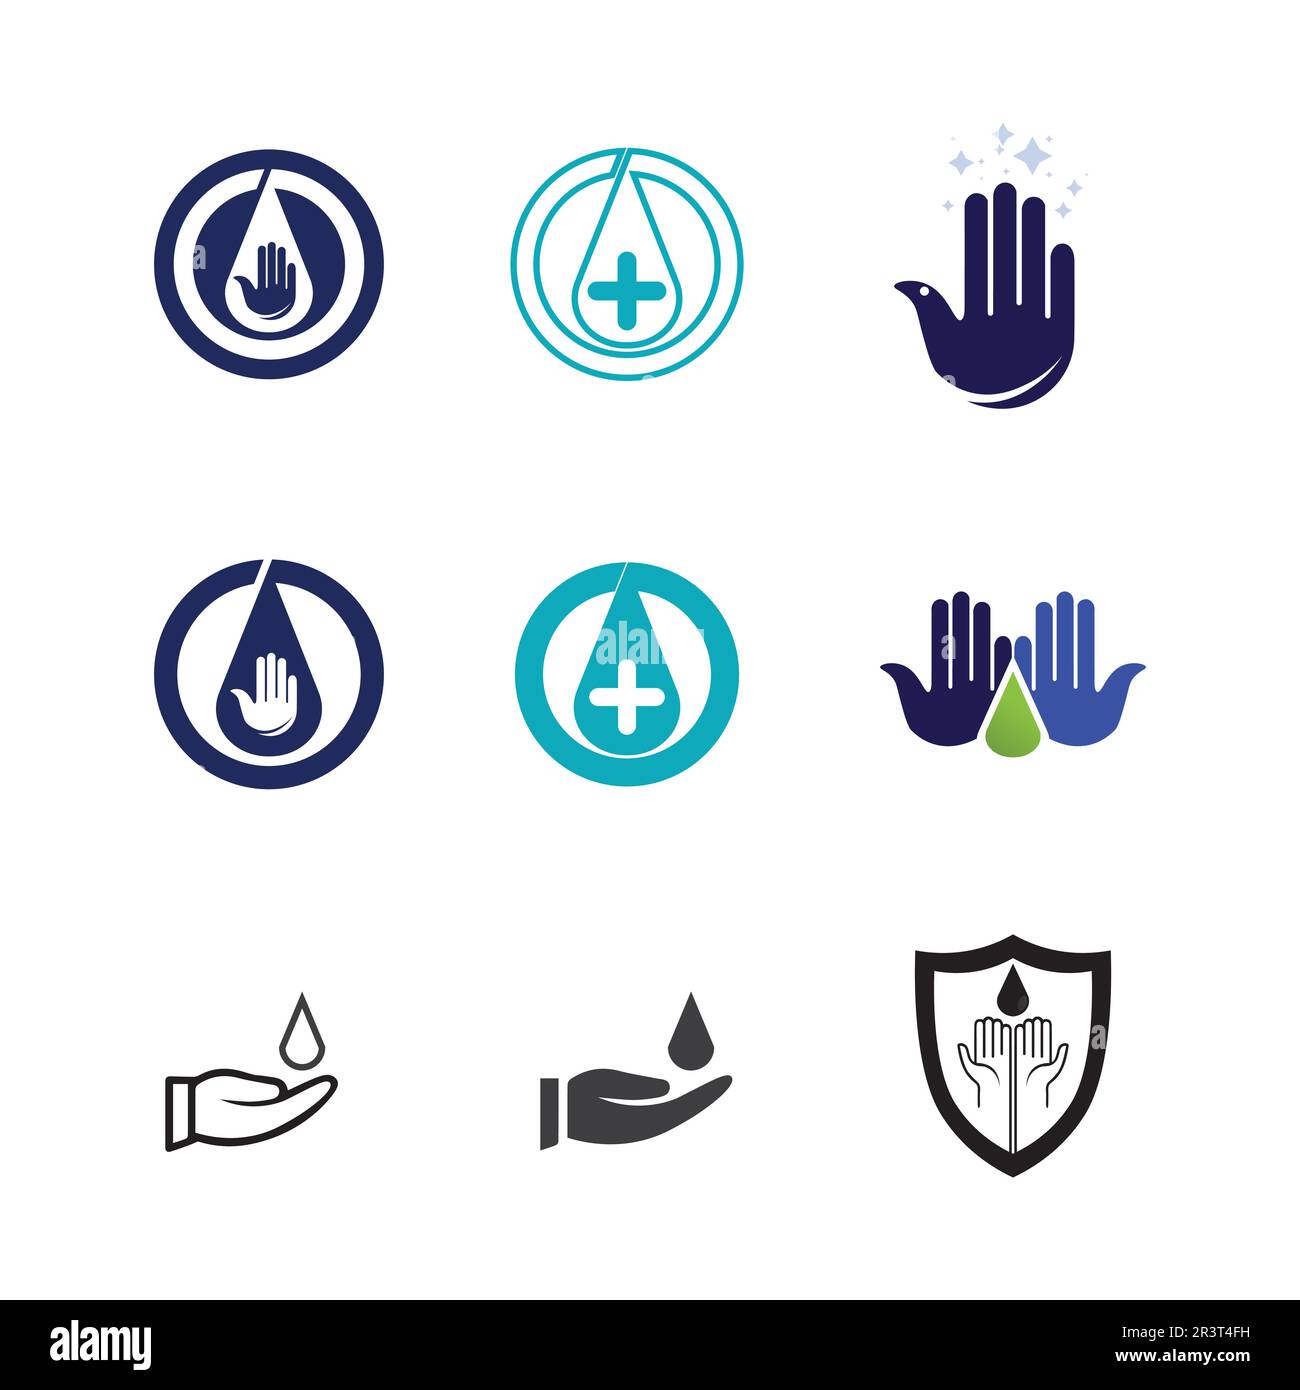 Gesundheitsschutz mit Schild Logo Design Vektor-Vorlage für medizinische Oder Versicherungsunternehmen-Vektor Stock Vektor